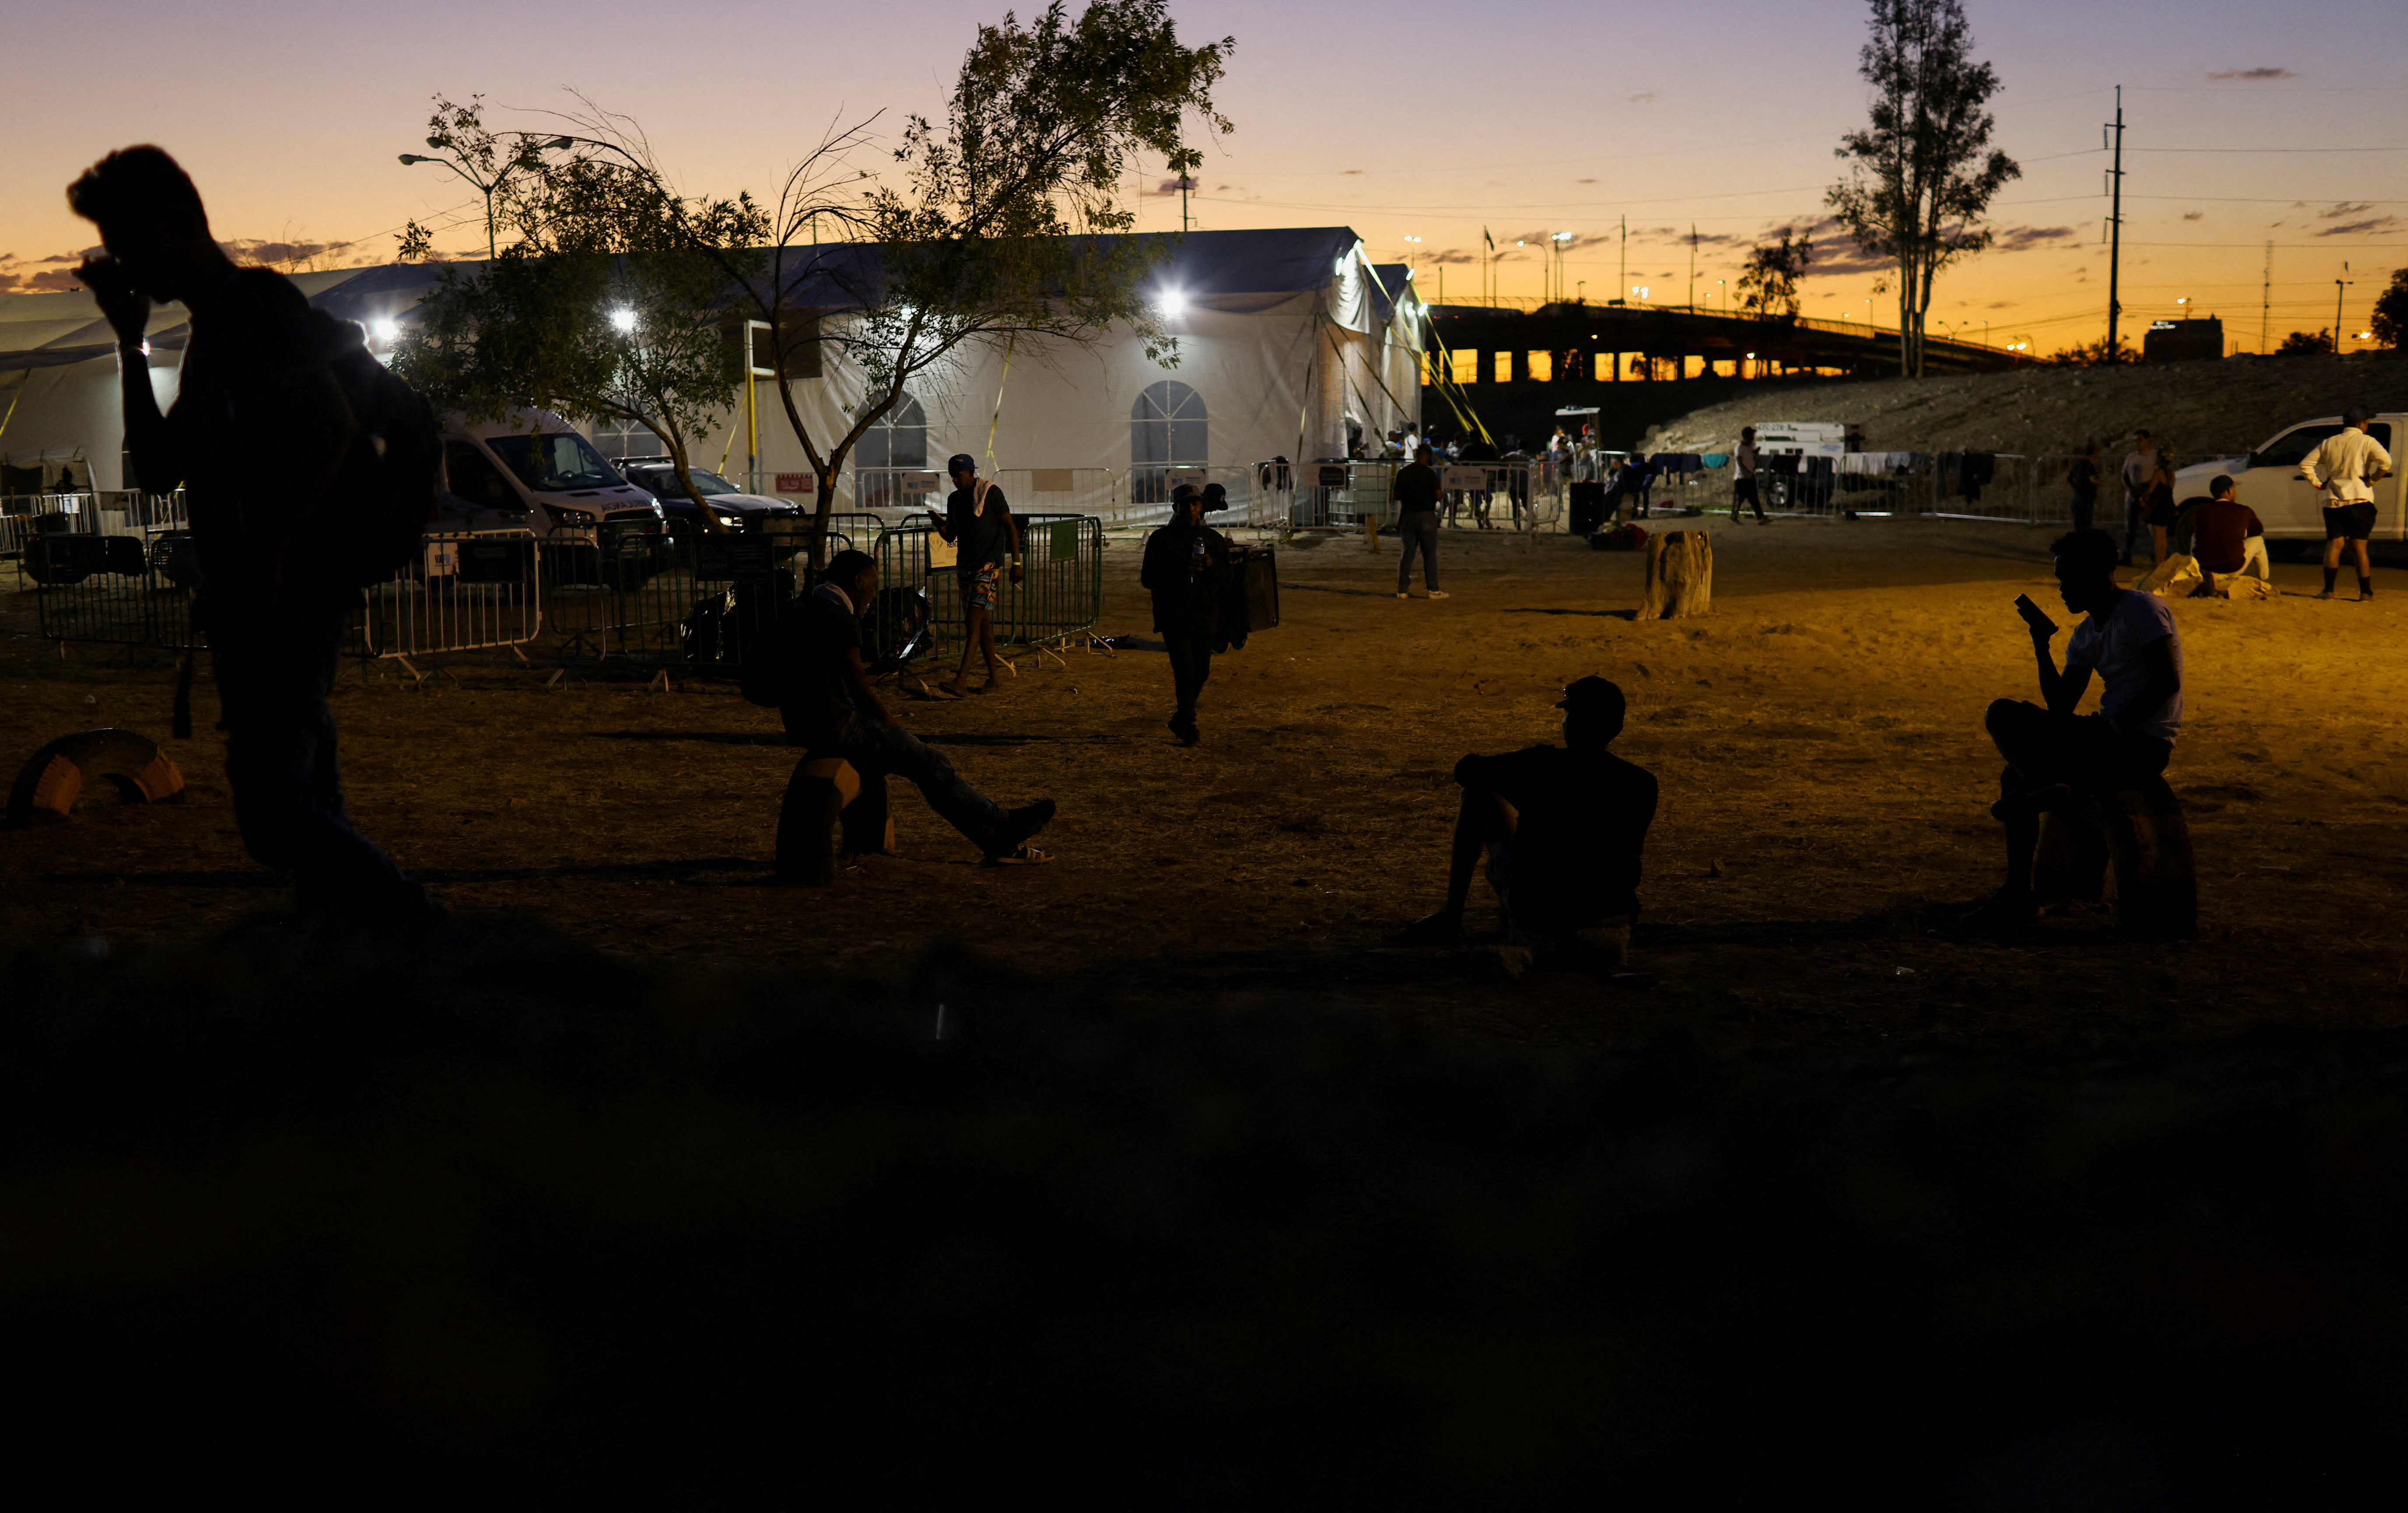 Los migrantes arribaron a un nuevo refugio establecido por las autoridades locales para albergar a las personas que fueron desalojadas de un campamento ubicado frente al centro de detención migratoria. (REUTERS/Jose Luis Gonzalez     TPX IMAGES OF THE DAY)